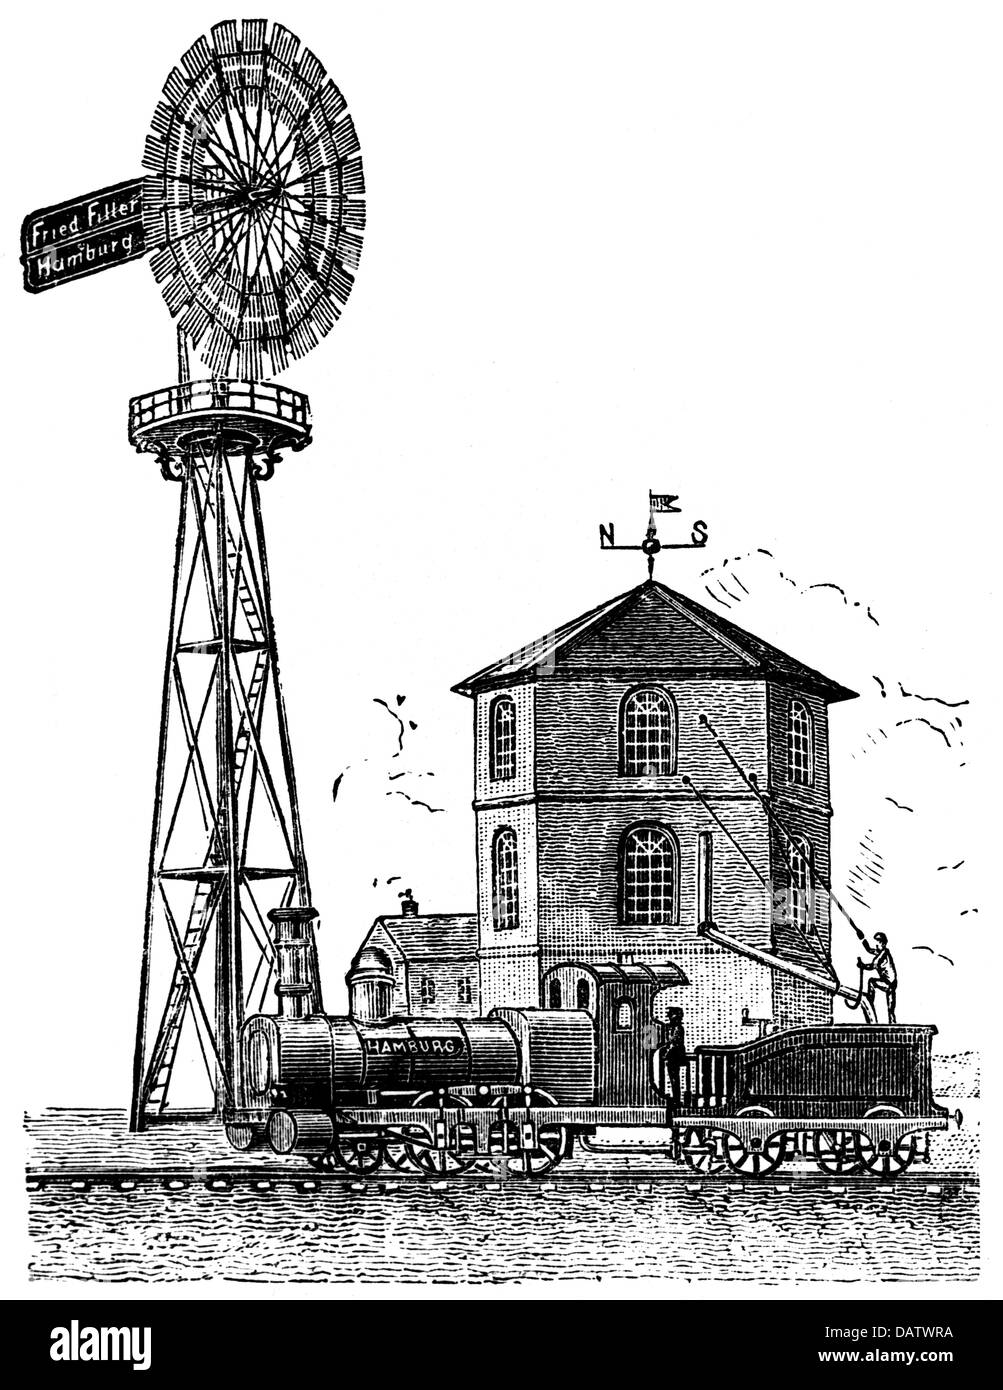 Energie, Wind, Windpumpe für den Betrieb einer Bahnwasserstation, Friedrich Filler, Hamburg - Eimsbüttel, um 1875, Zusatz-Rechteklärung-nicht vorhanden Stockfoto